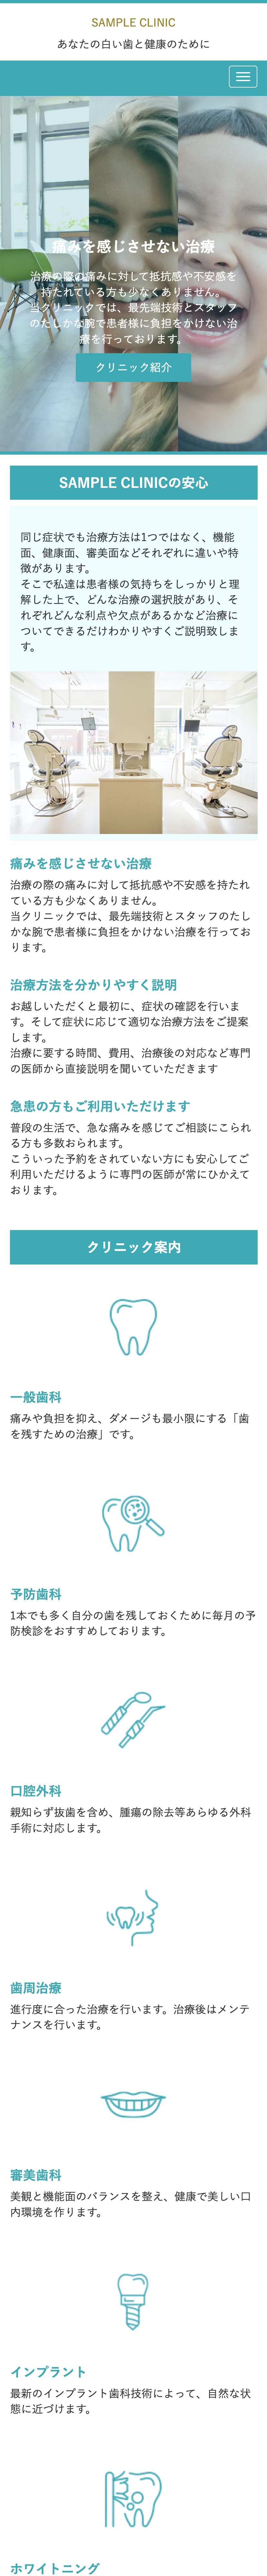 歯科系トップページモバイル表示